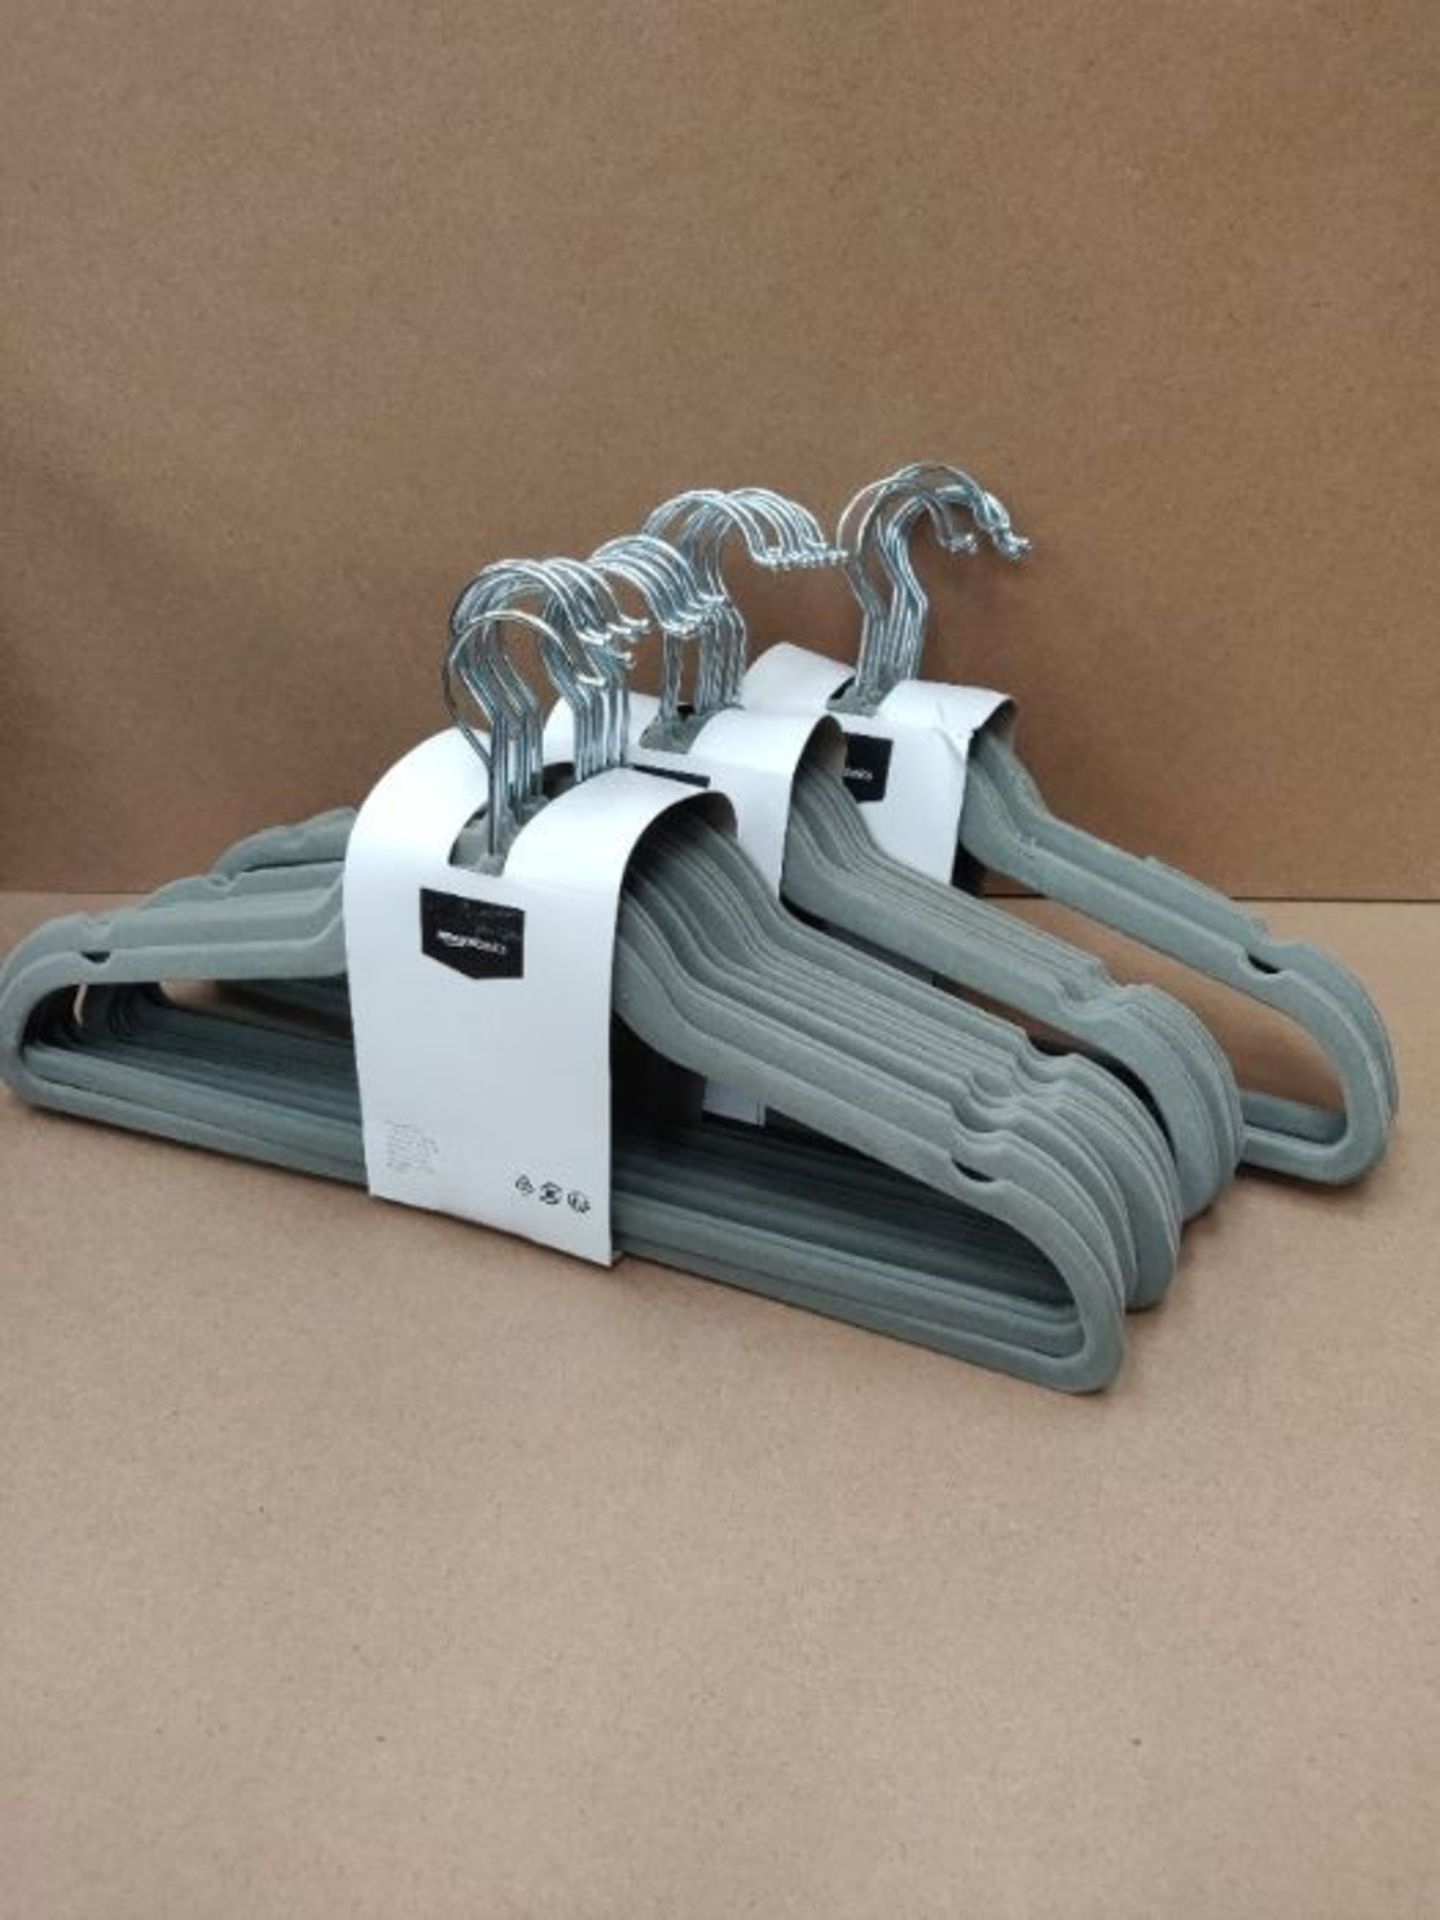 [INCOMPLETE] Amazon Basics Velvet Suit Hanger Pack of 50, Gray - Image 2 of 2